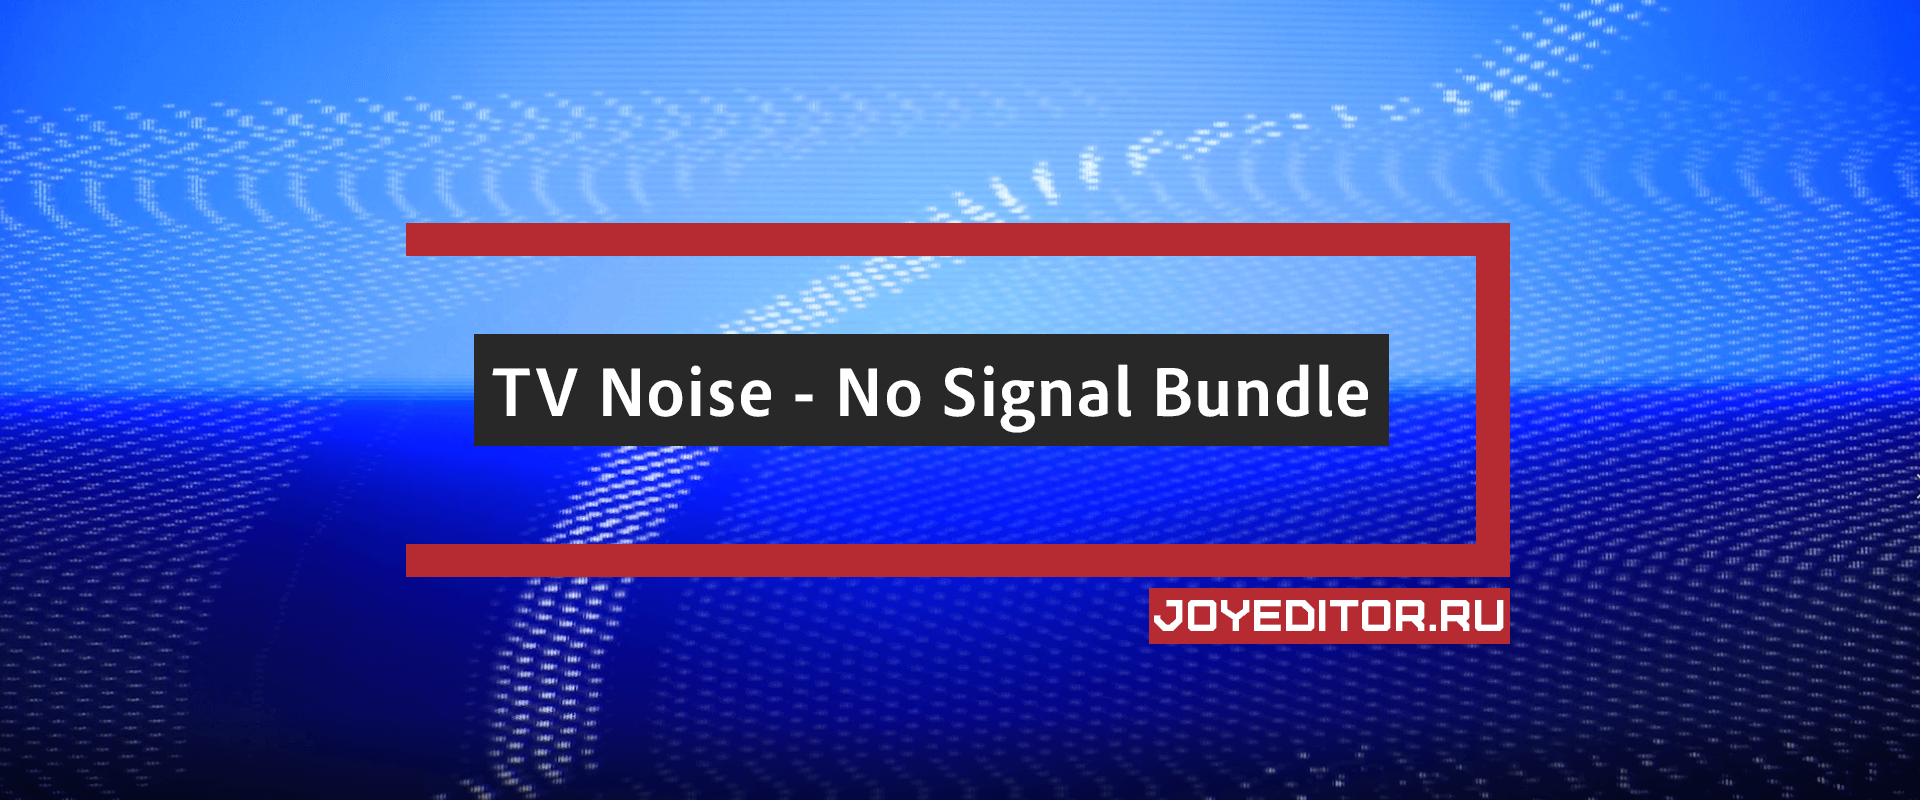 TV Noise - No Signal Bundle